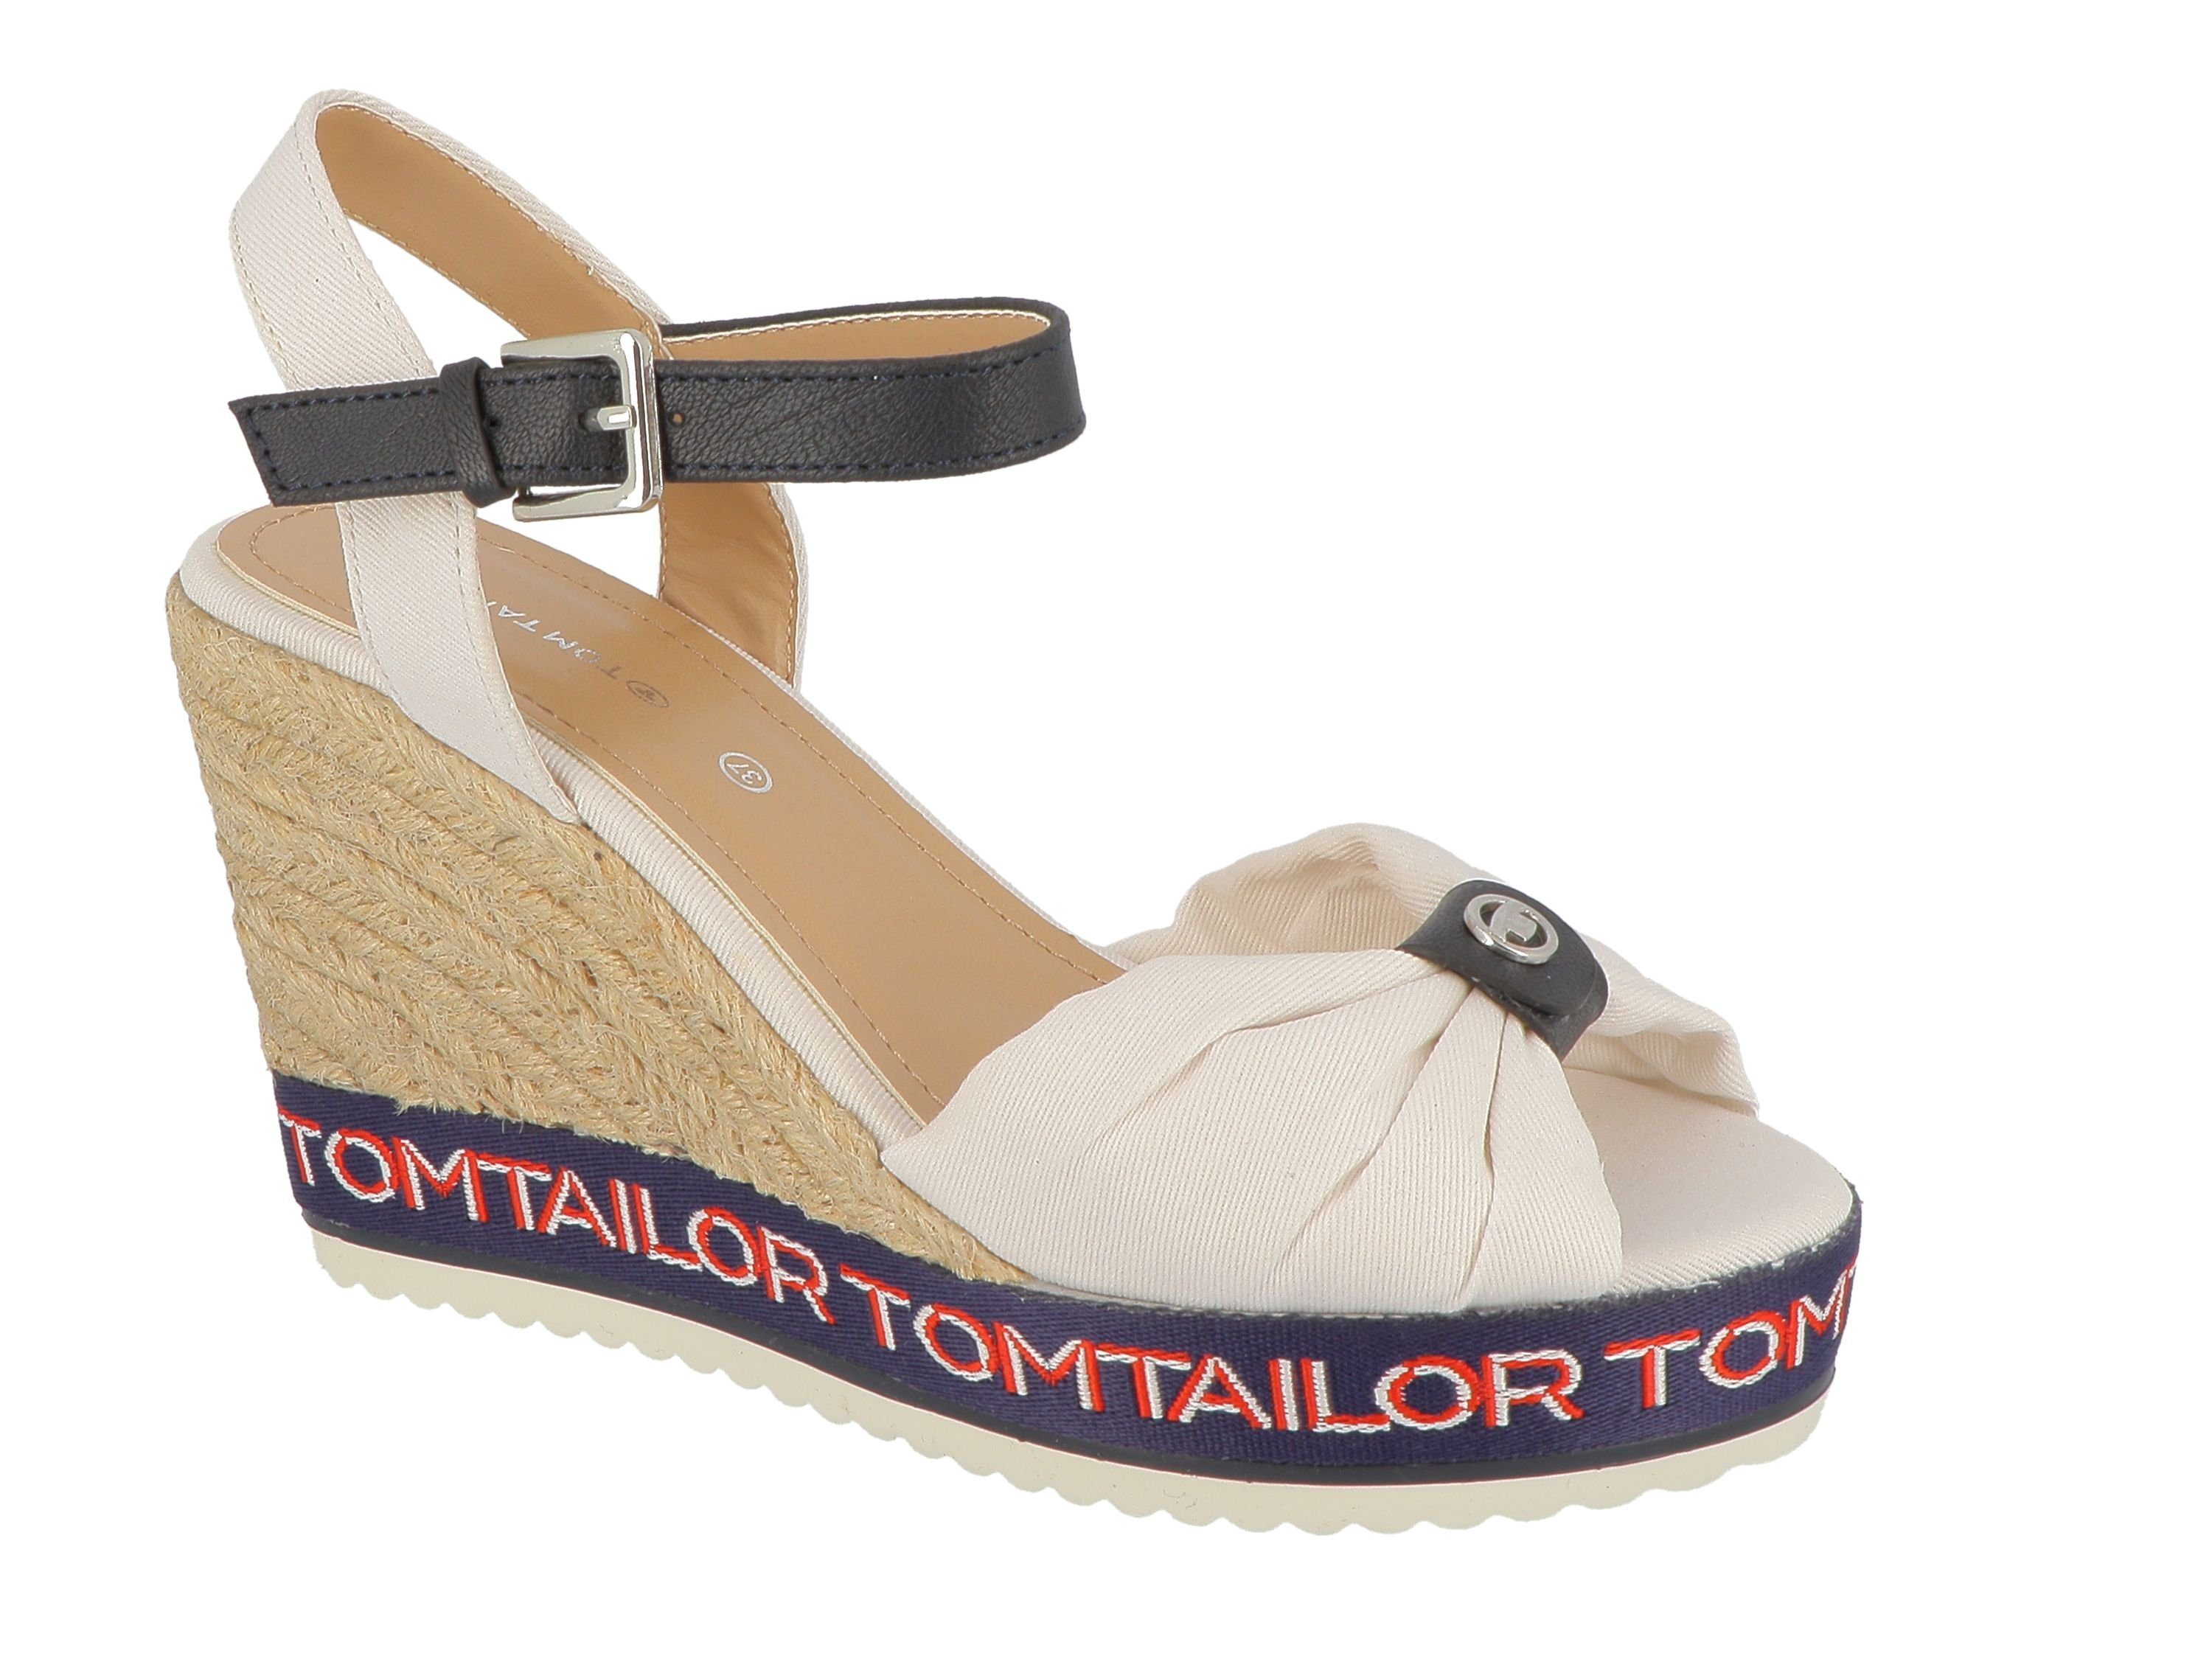 TOM TAILOR Tom Tailor Sandaletten für Damen Keilsandalette weiß